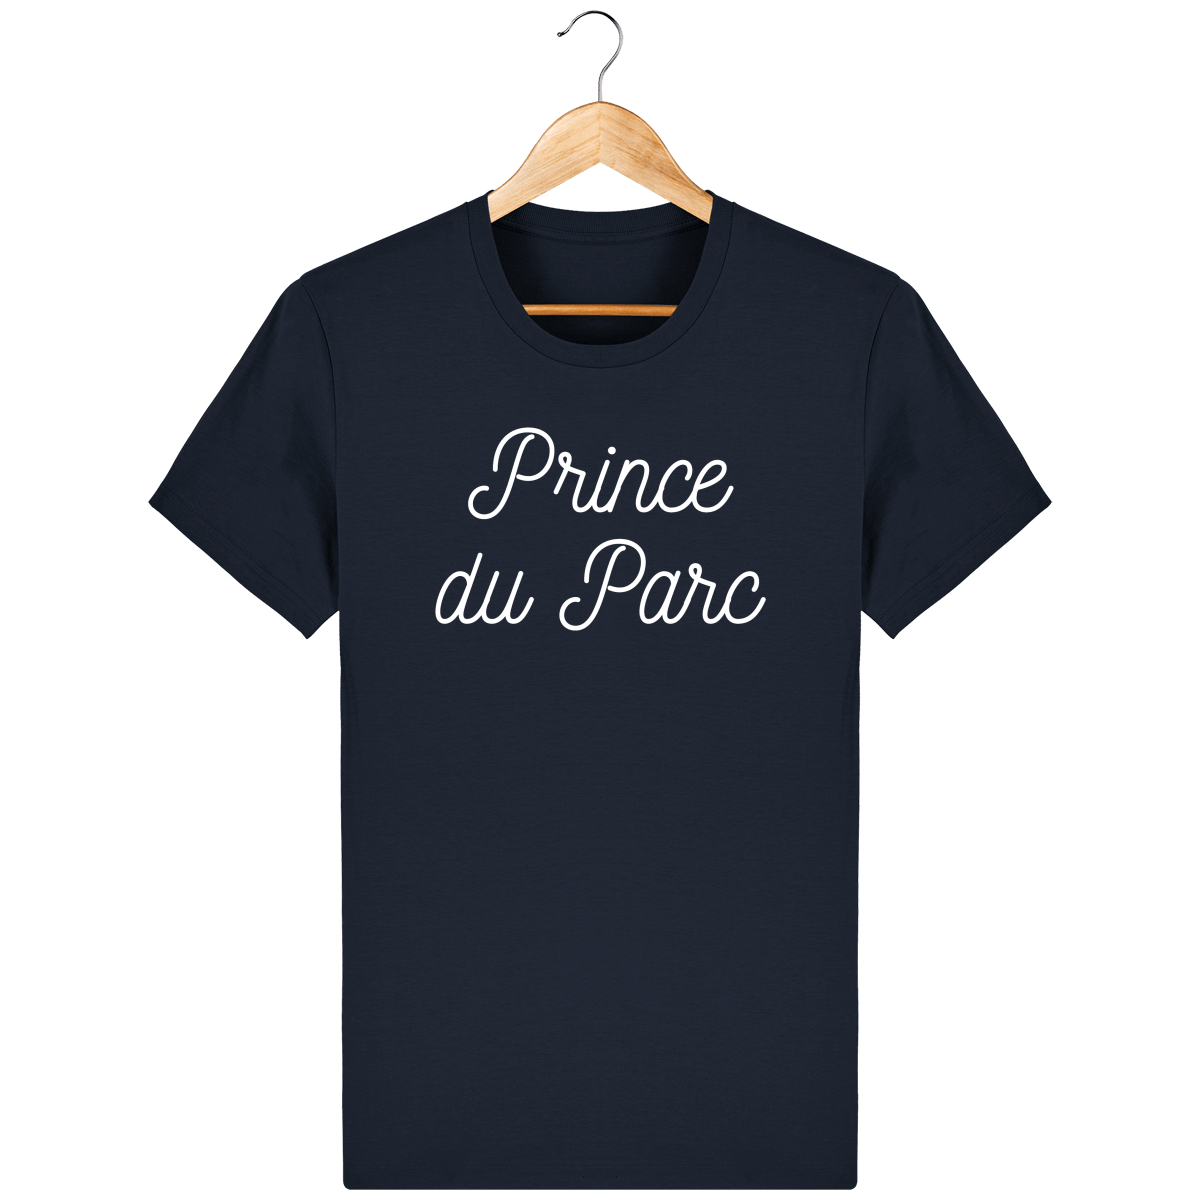 Tee Shirt "Prince du Parc" - Foot Dimanche 